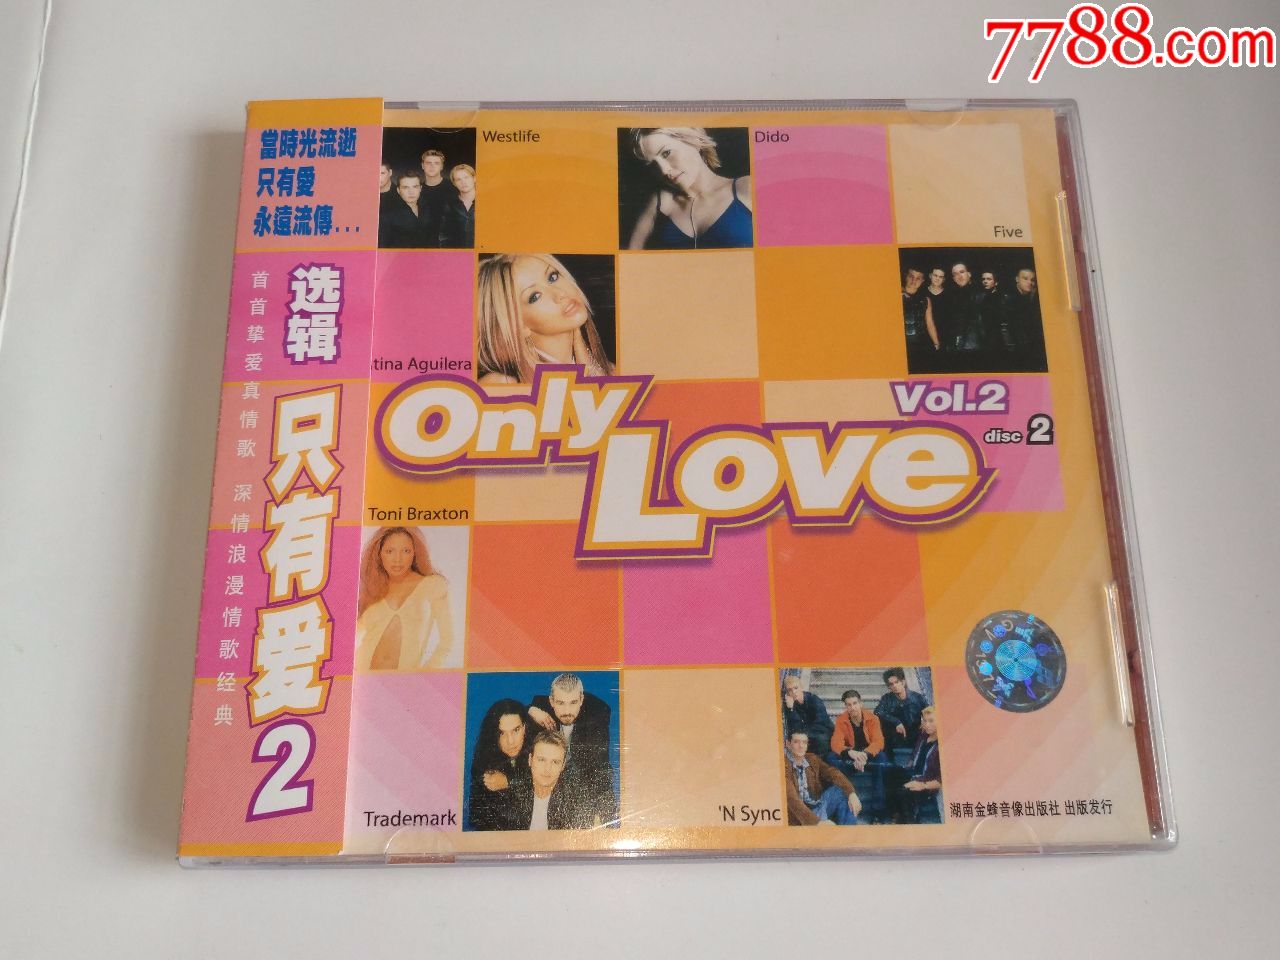 欧美群星合辑【Only_Love_vol.2】湖南金蜂盒